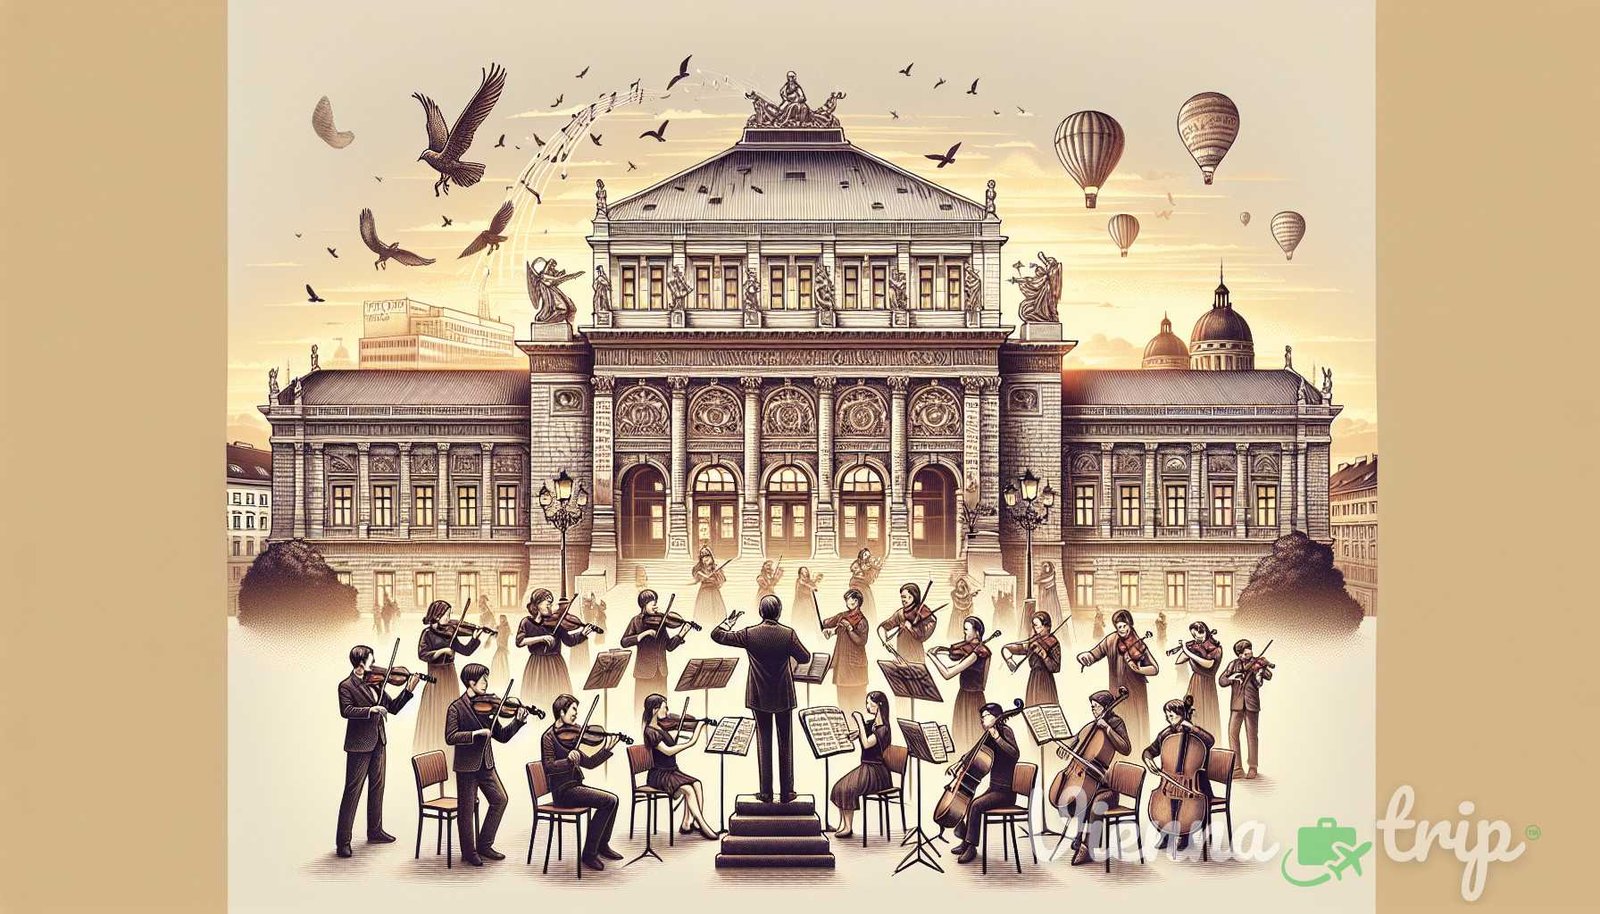 Ilustración para el capítulo: 1. Conservatorios de música: Viena cuenta con varios conservatorios de música prestigiosos, como el Univers - vienna melodies